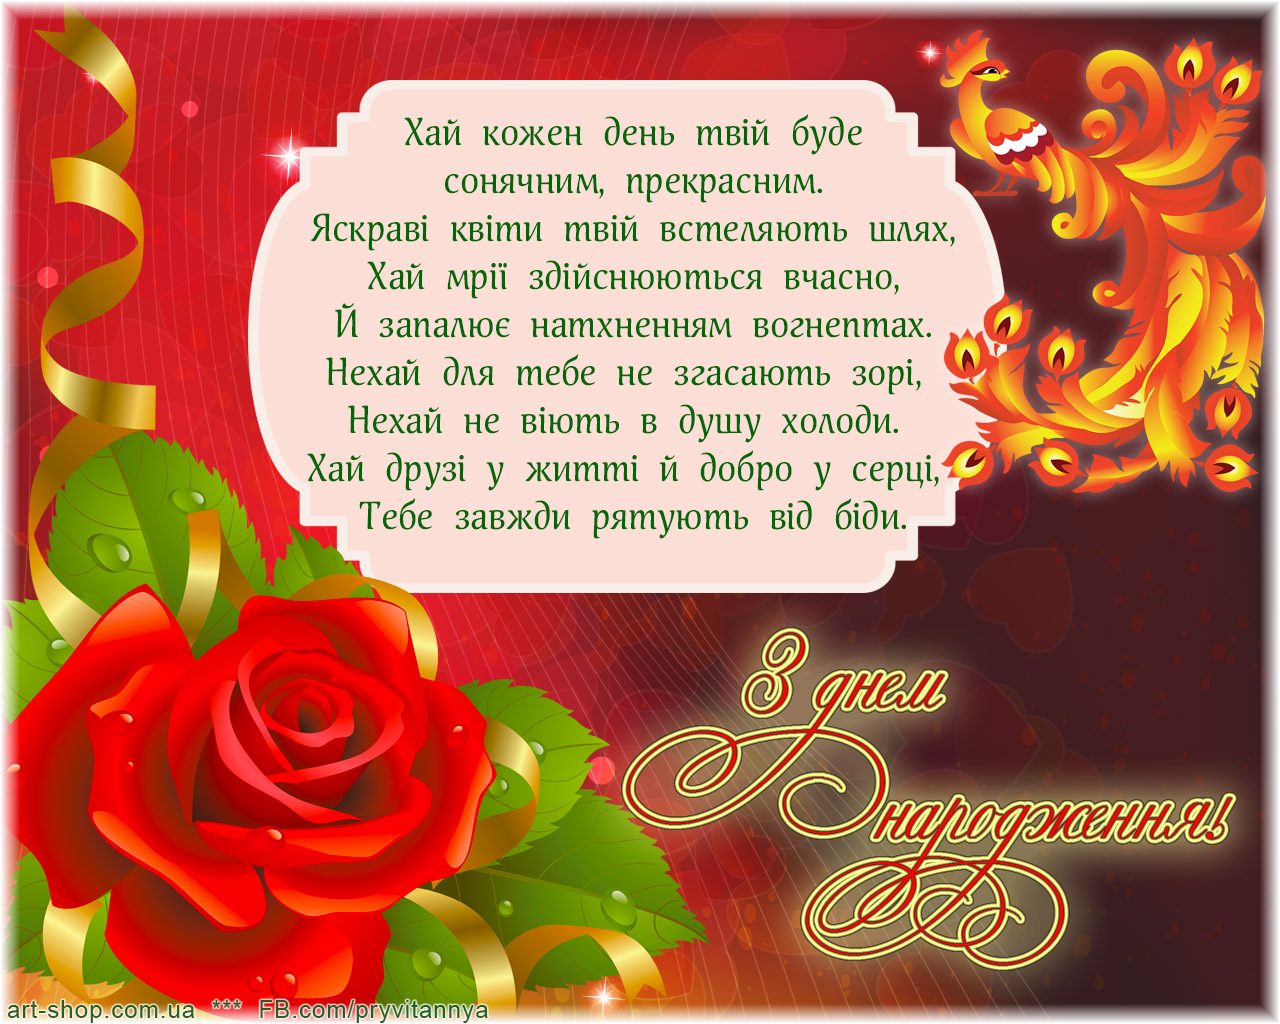 Открытка с днем рождения мужчине на украинском. Привітання з днем народження. Открытка с днем рождения на украинском. Поздравления с днём рождения на украинском языке. Красивое поздравление с днём рождения на украинском языке.